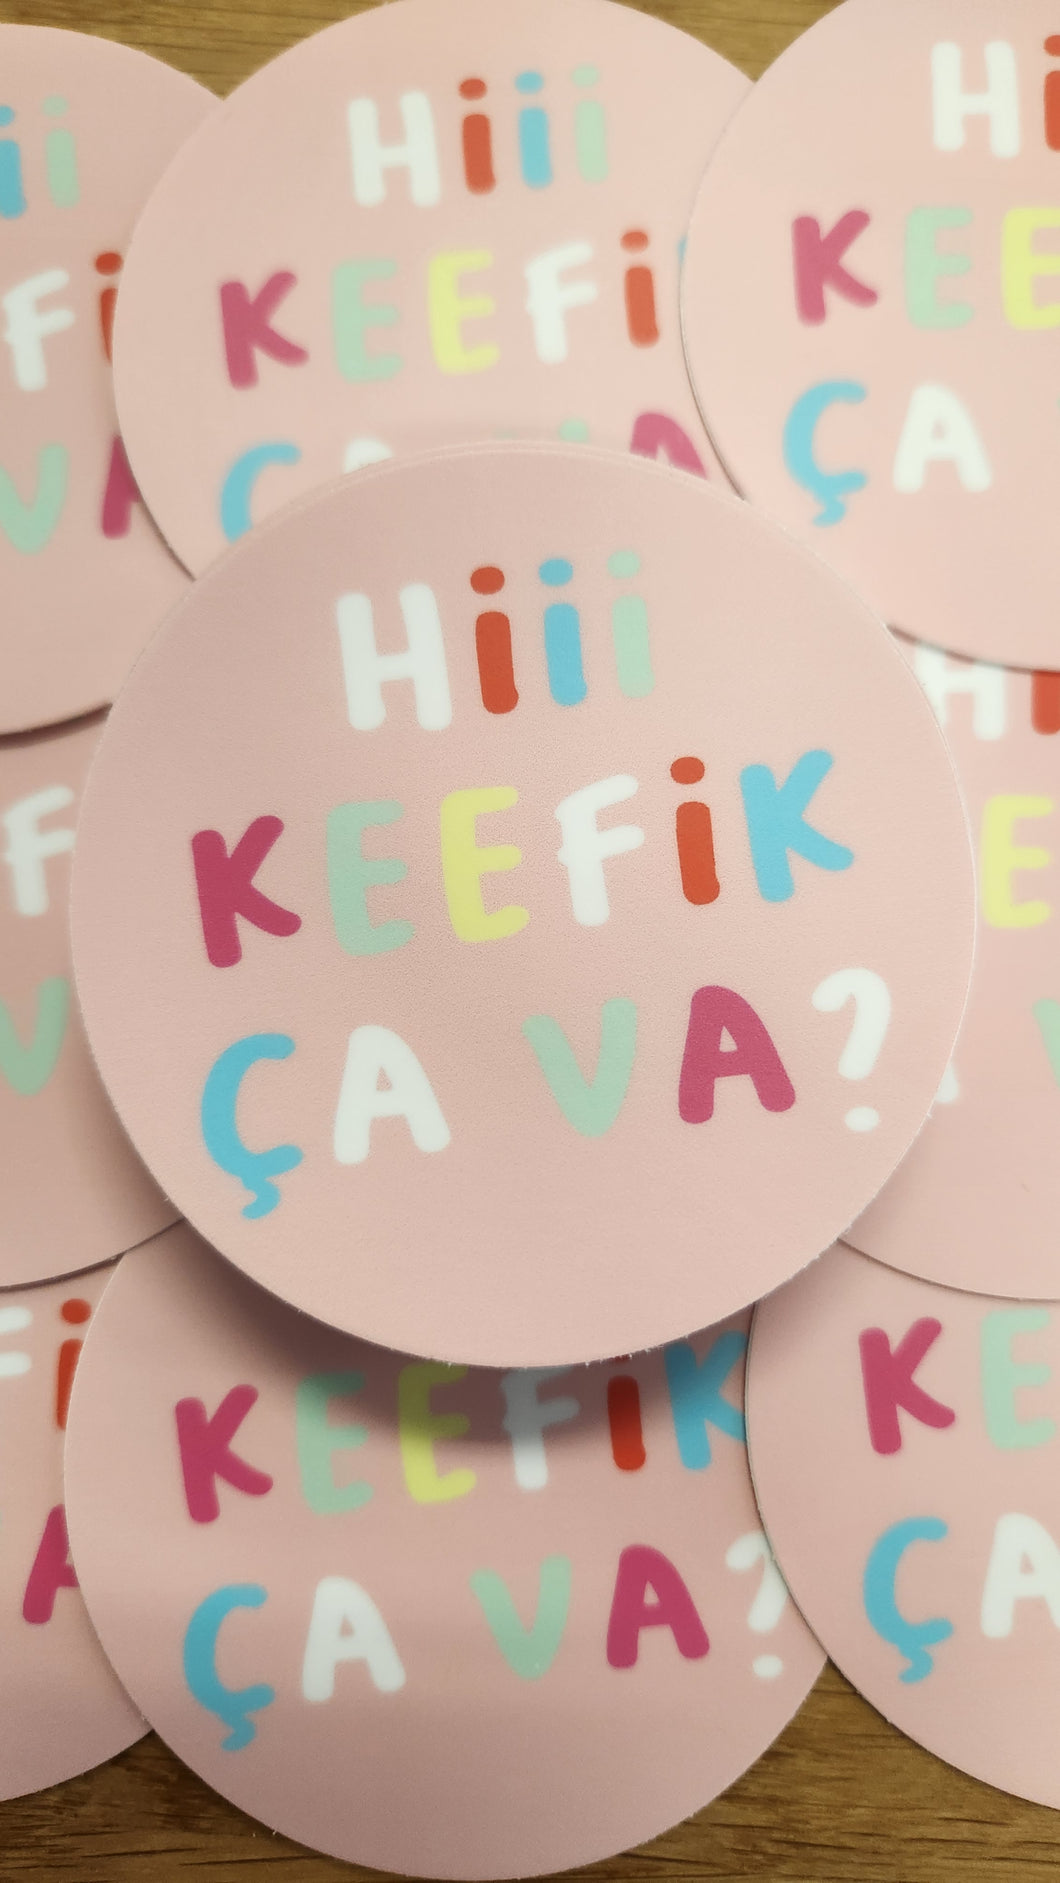 Hi Keefik Ca Va Sticker